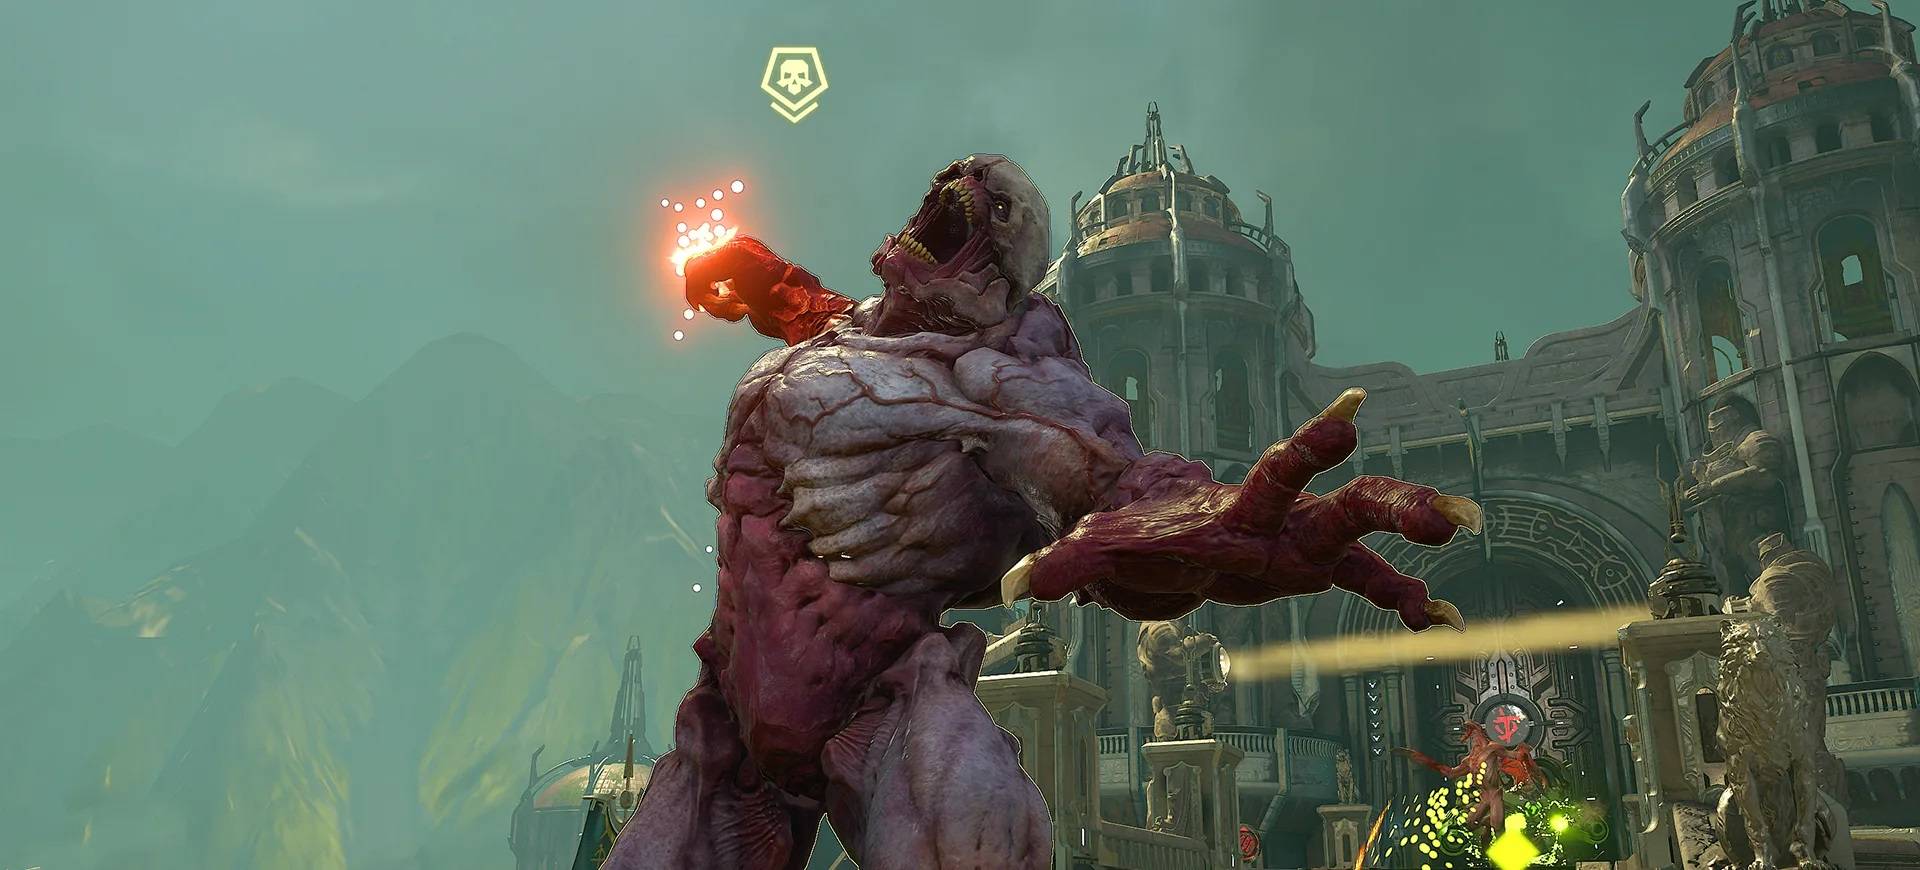 DOOM Eternal introducerar kraftfullare demoner i sin nya uppdatering